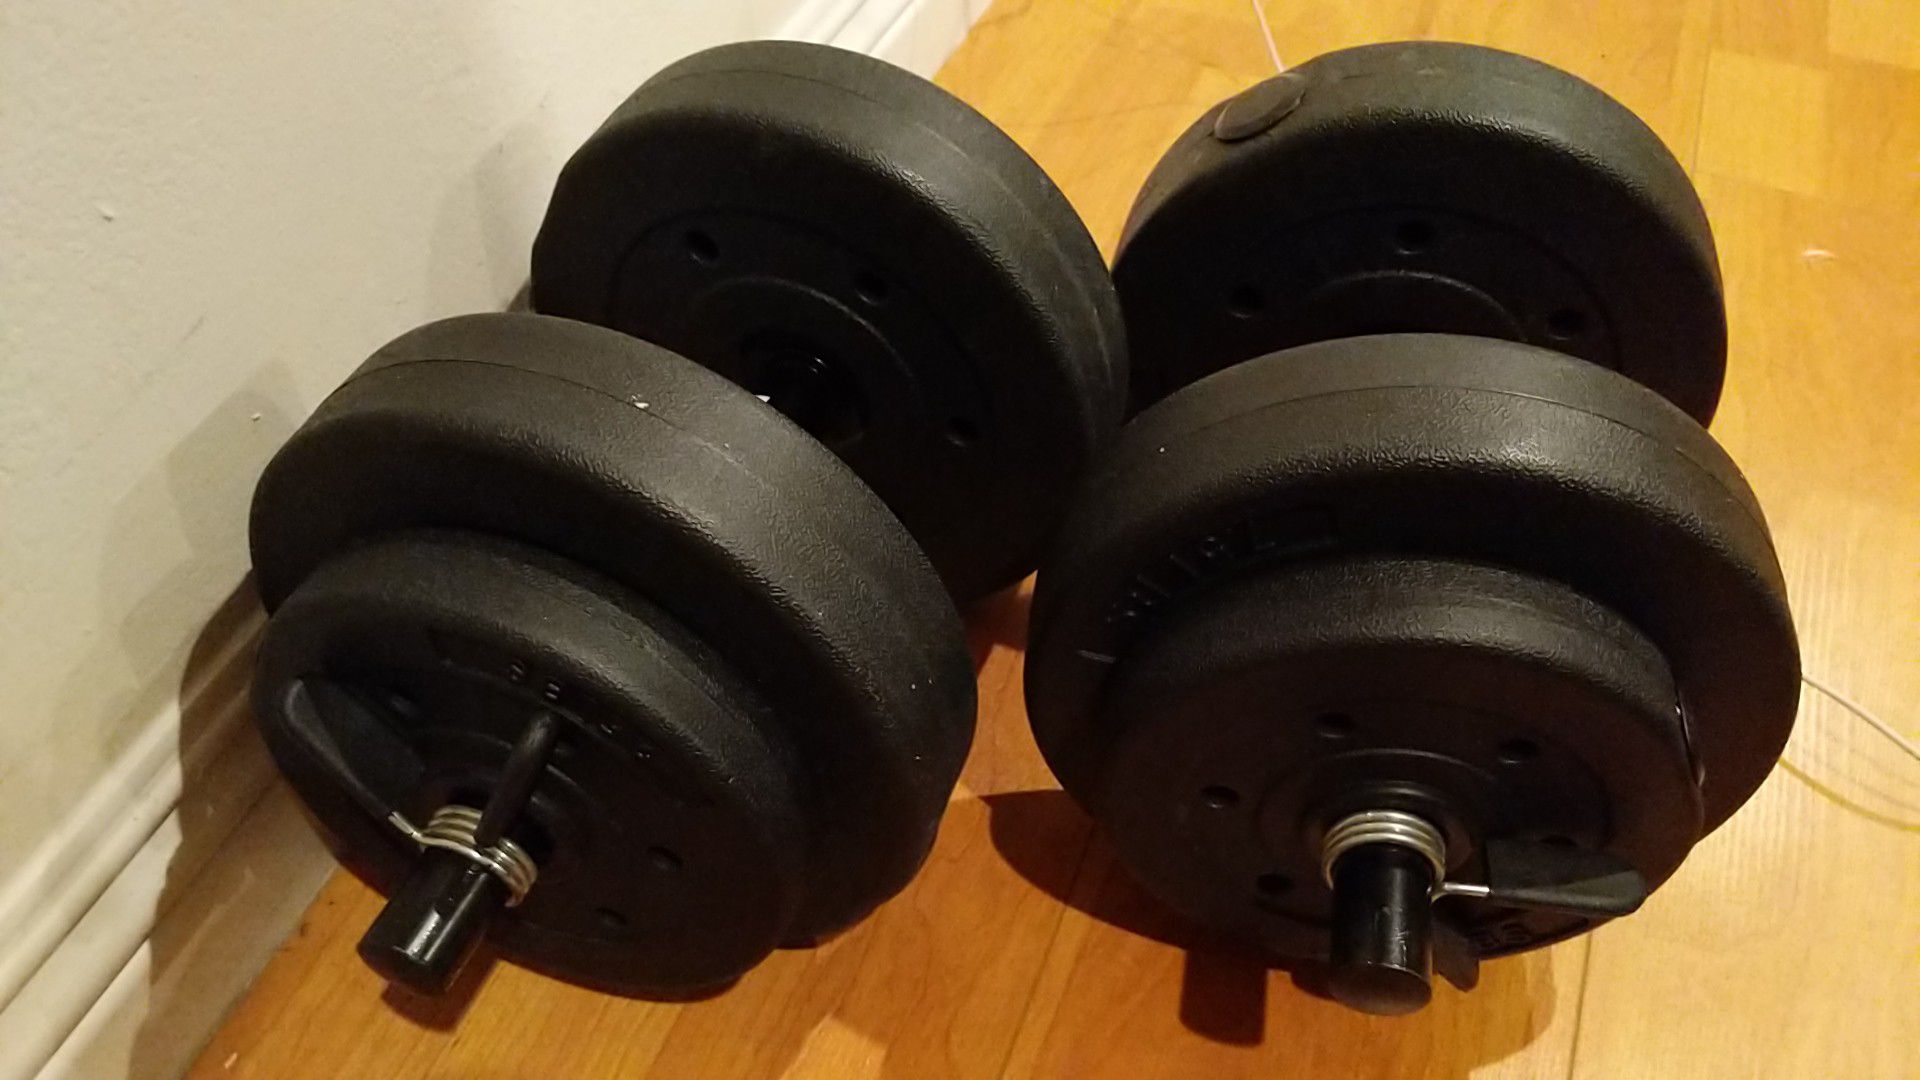 Adjustable 30 pound weights